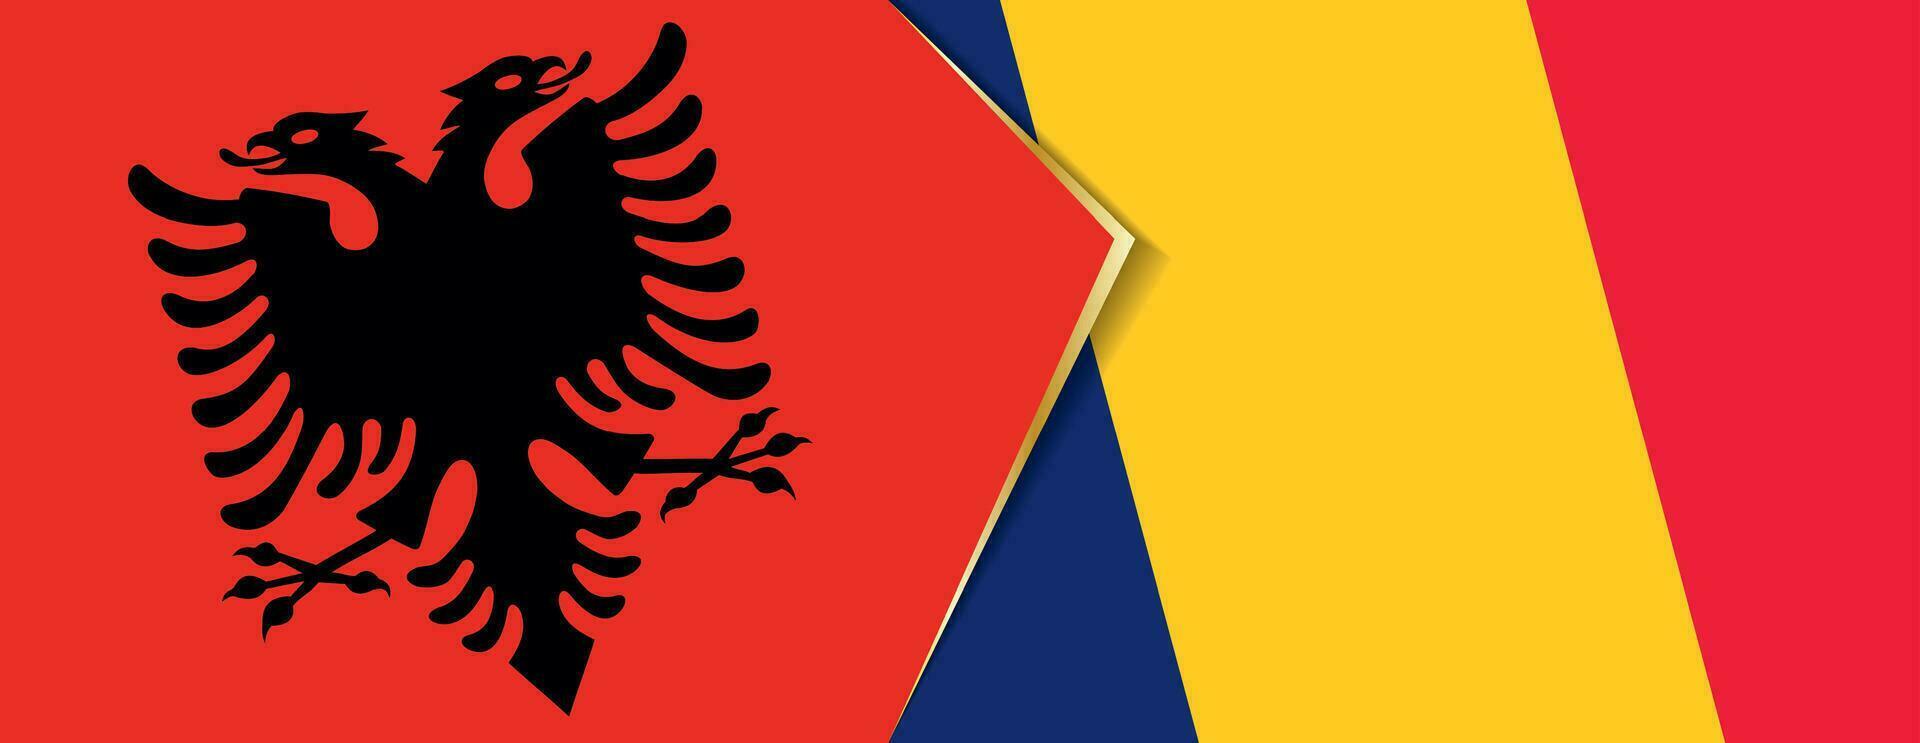 Albania y Chad banderas, dos vector banderas